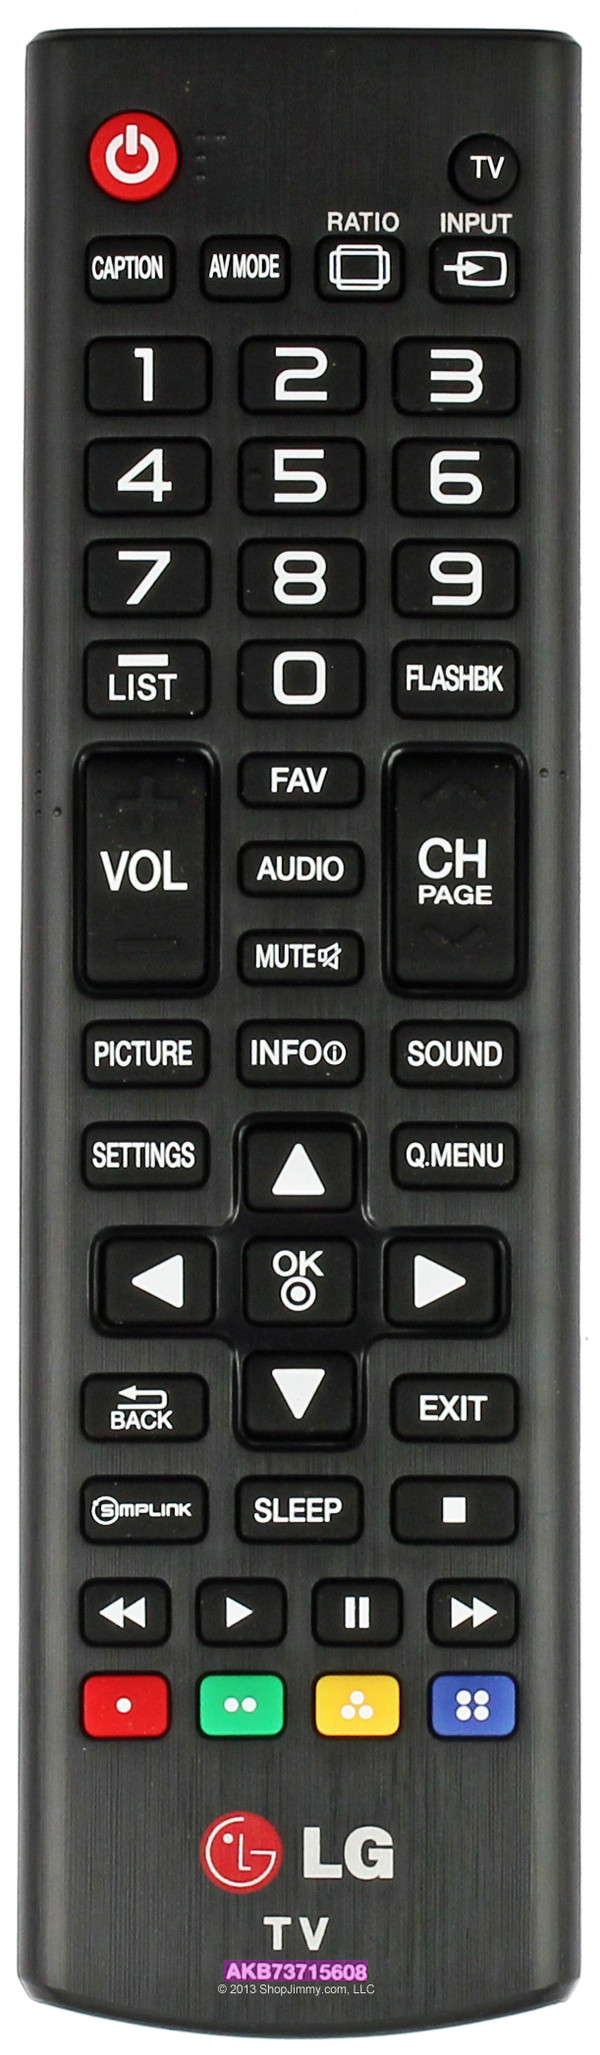 LG AKB73715608 Remote Control